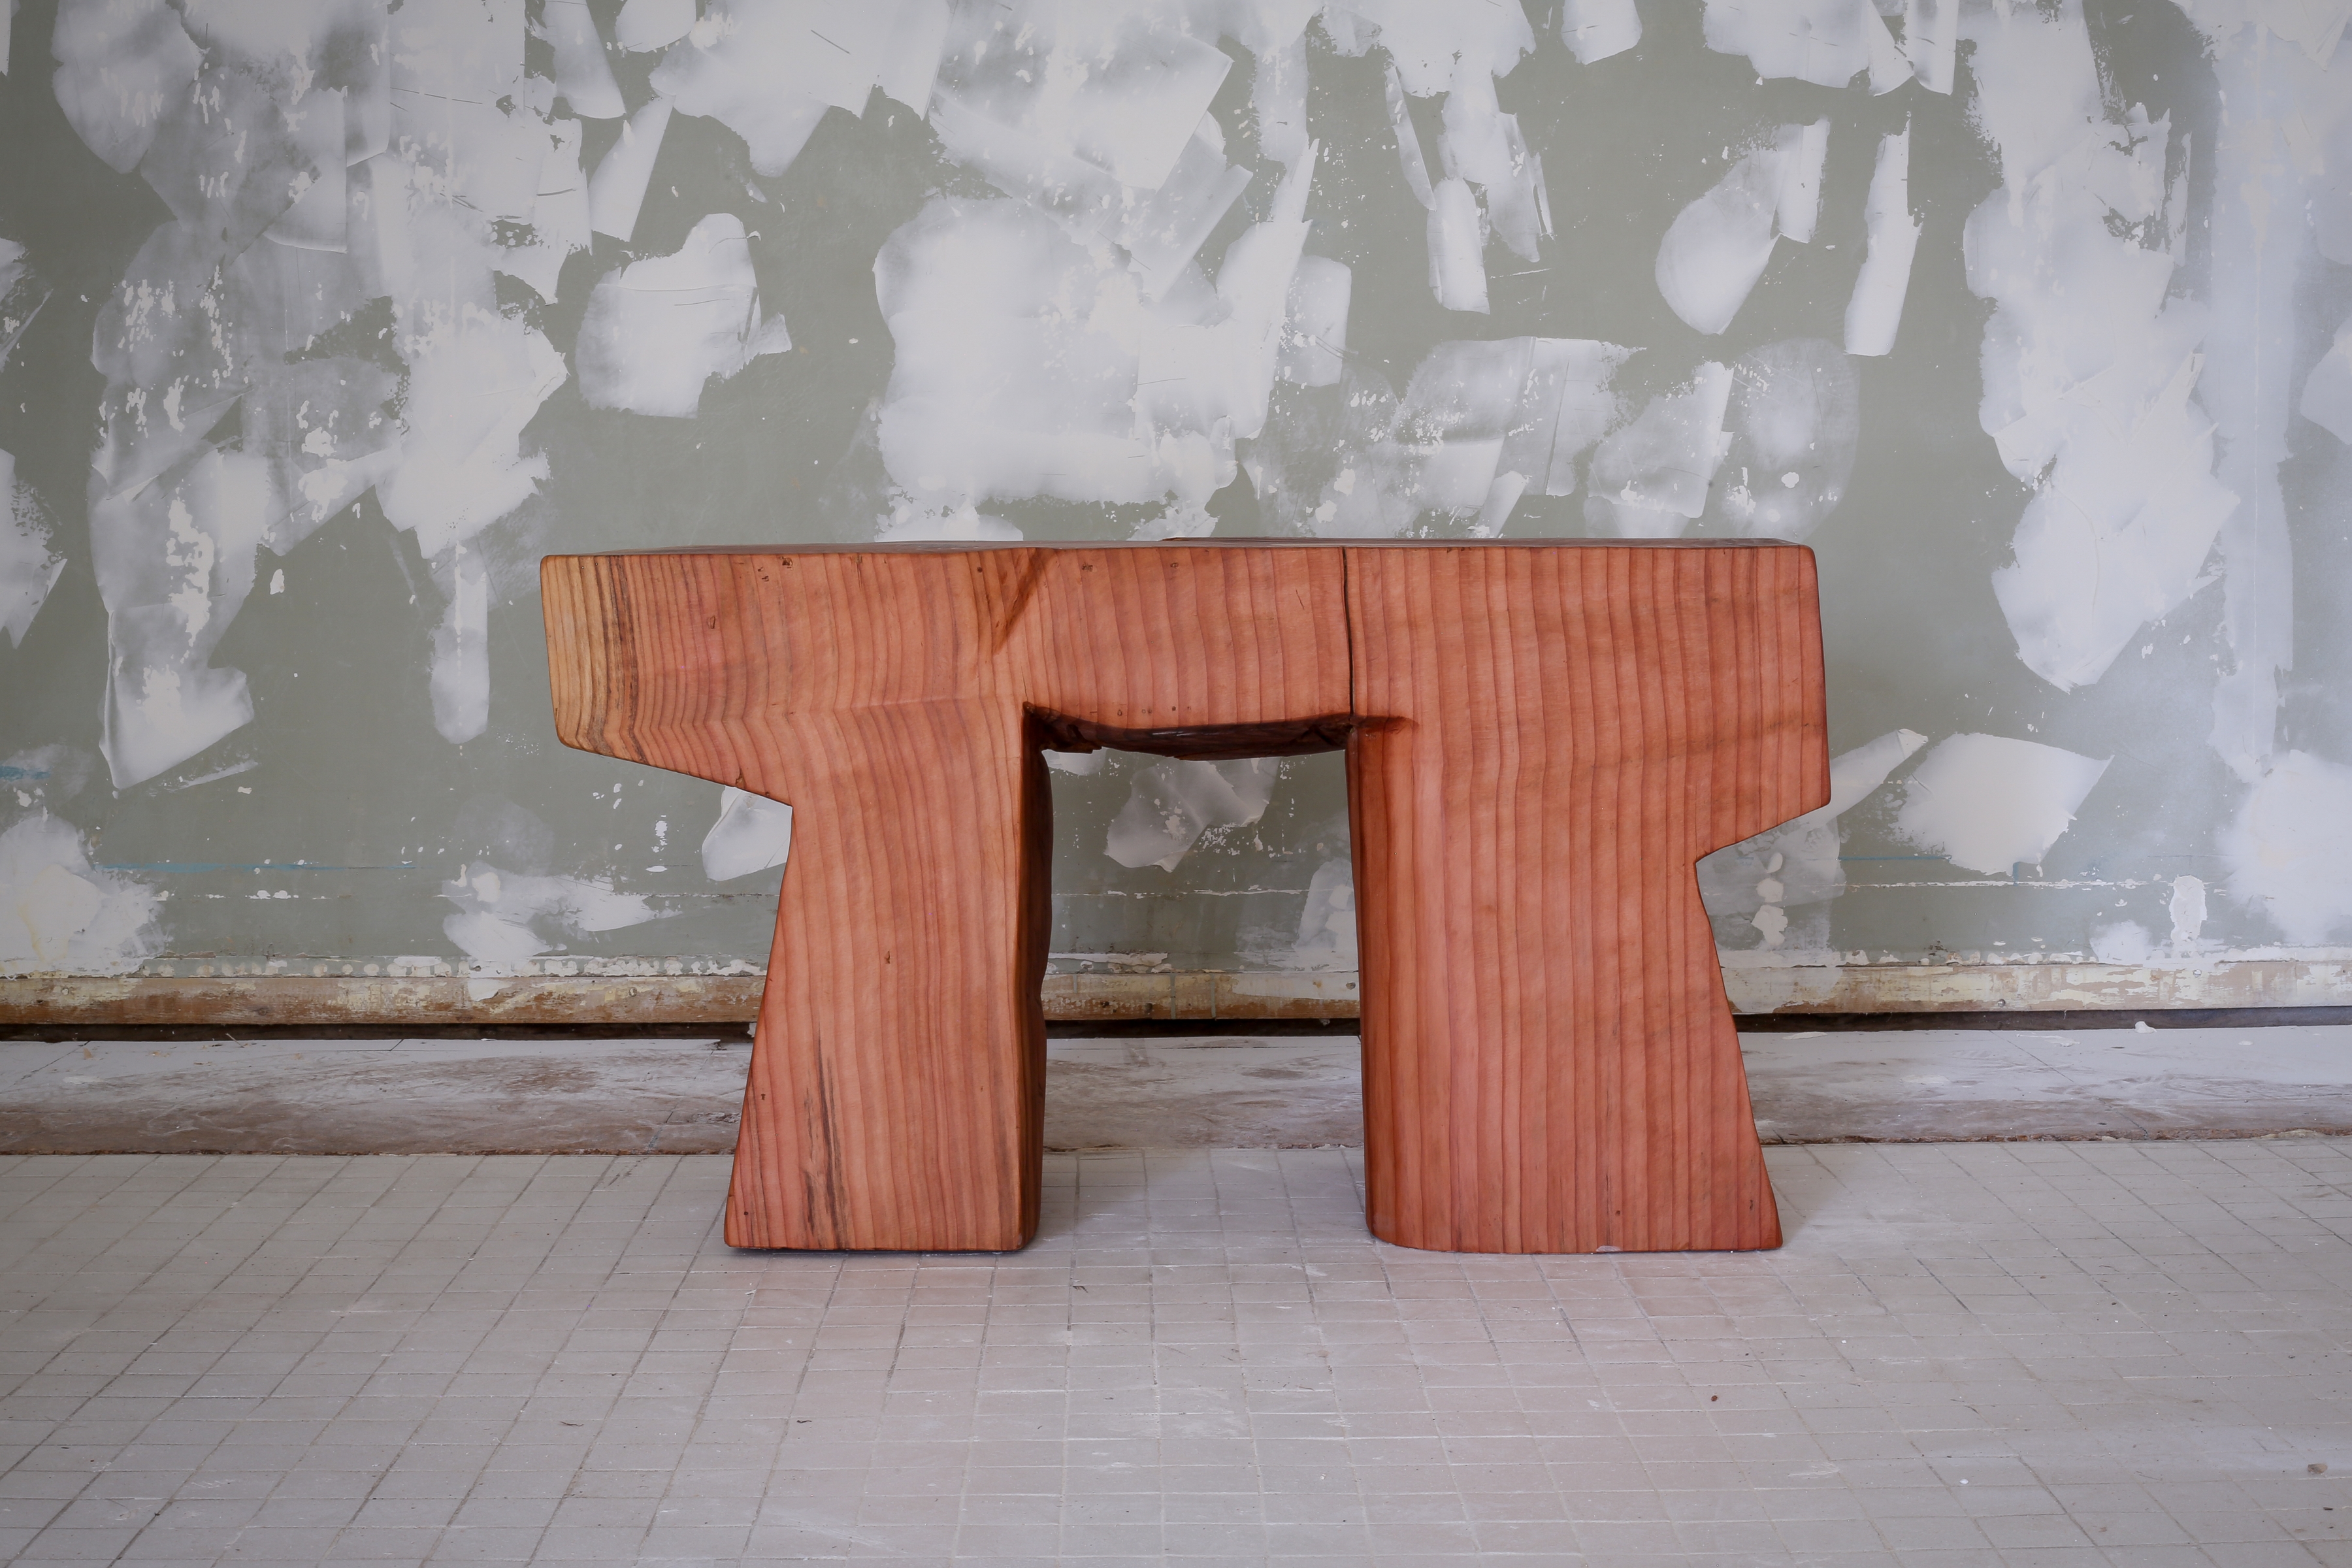 Aurora Table, 2021
wood (sequoia)
19h x 12w x 34 1/2d in
48.26h x 30.48w x 87.63d cm
VS_2021_0029
&nbsp;